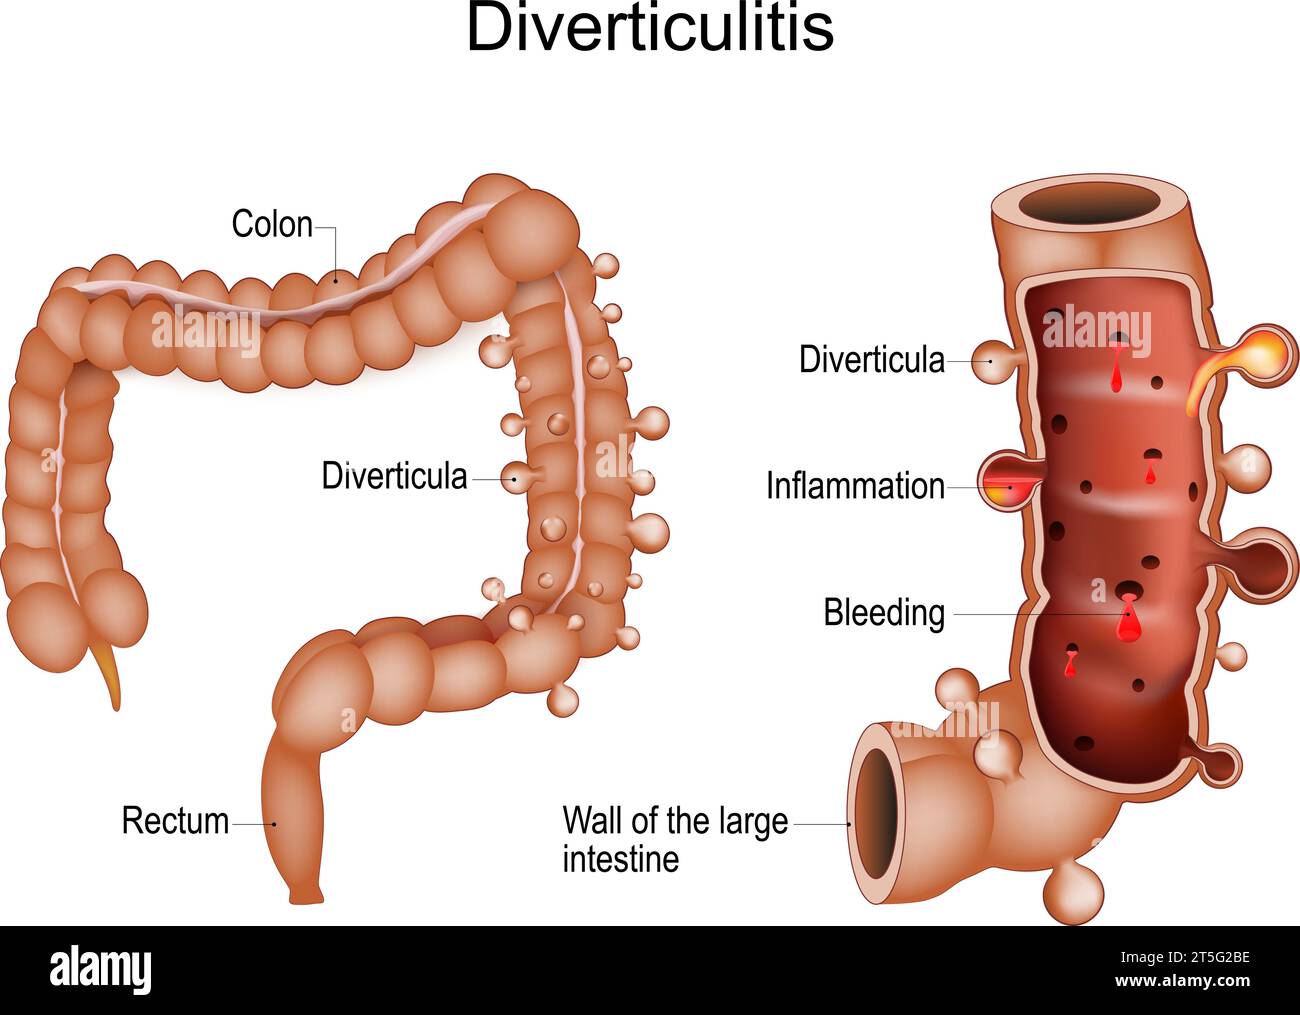 Divertikulitis Colon. Querschnitt eines Kolons mit Blutungen und Entzündungen abnormer Beutel oder Divertikeln. Gastrointestinale Erkrankungen. Mensch-L.A. Stock Vektor